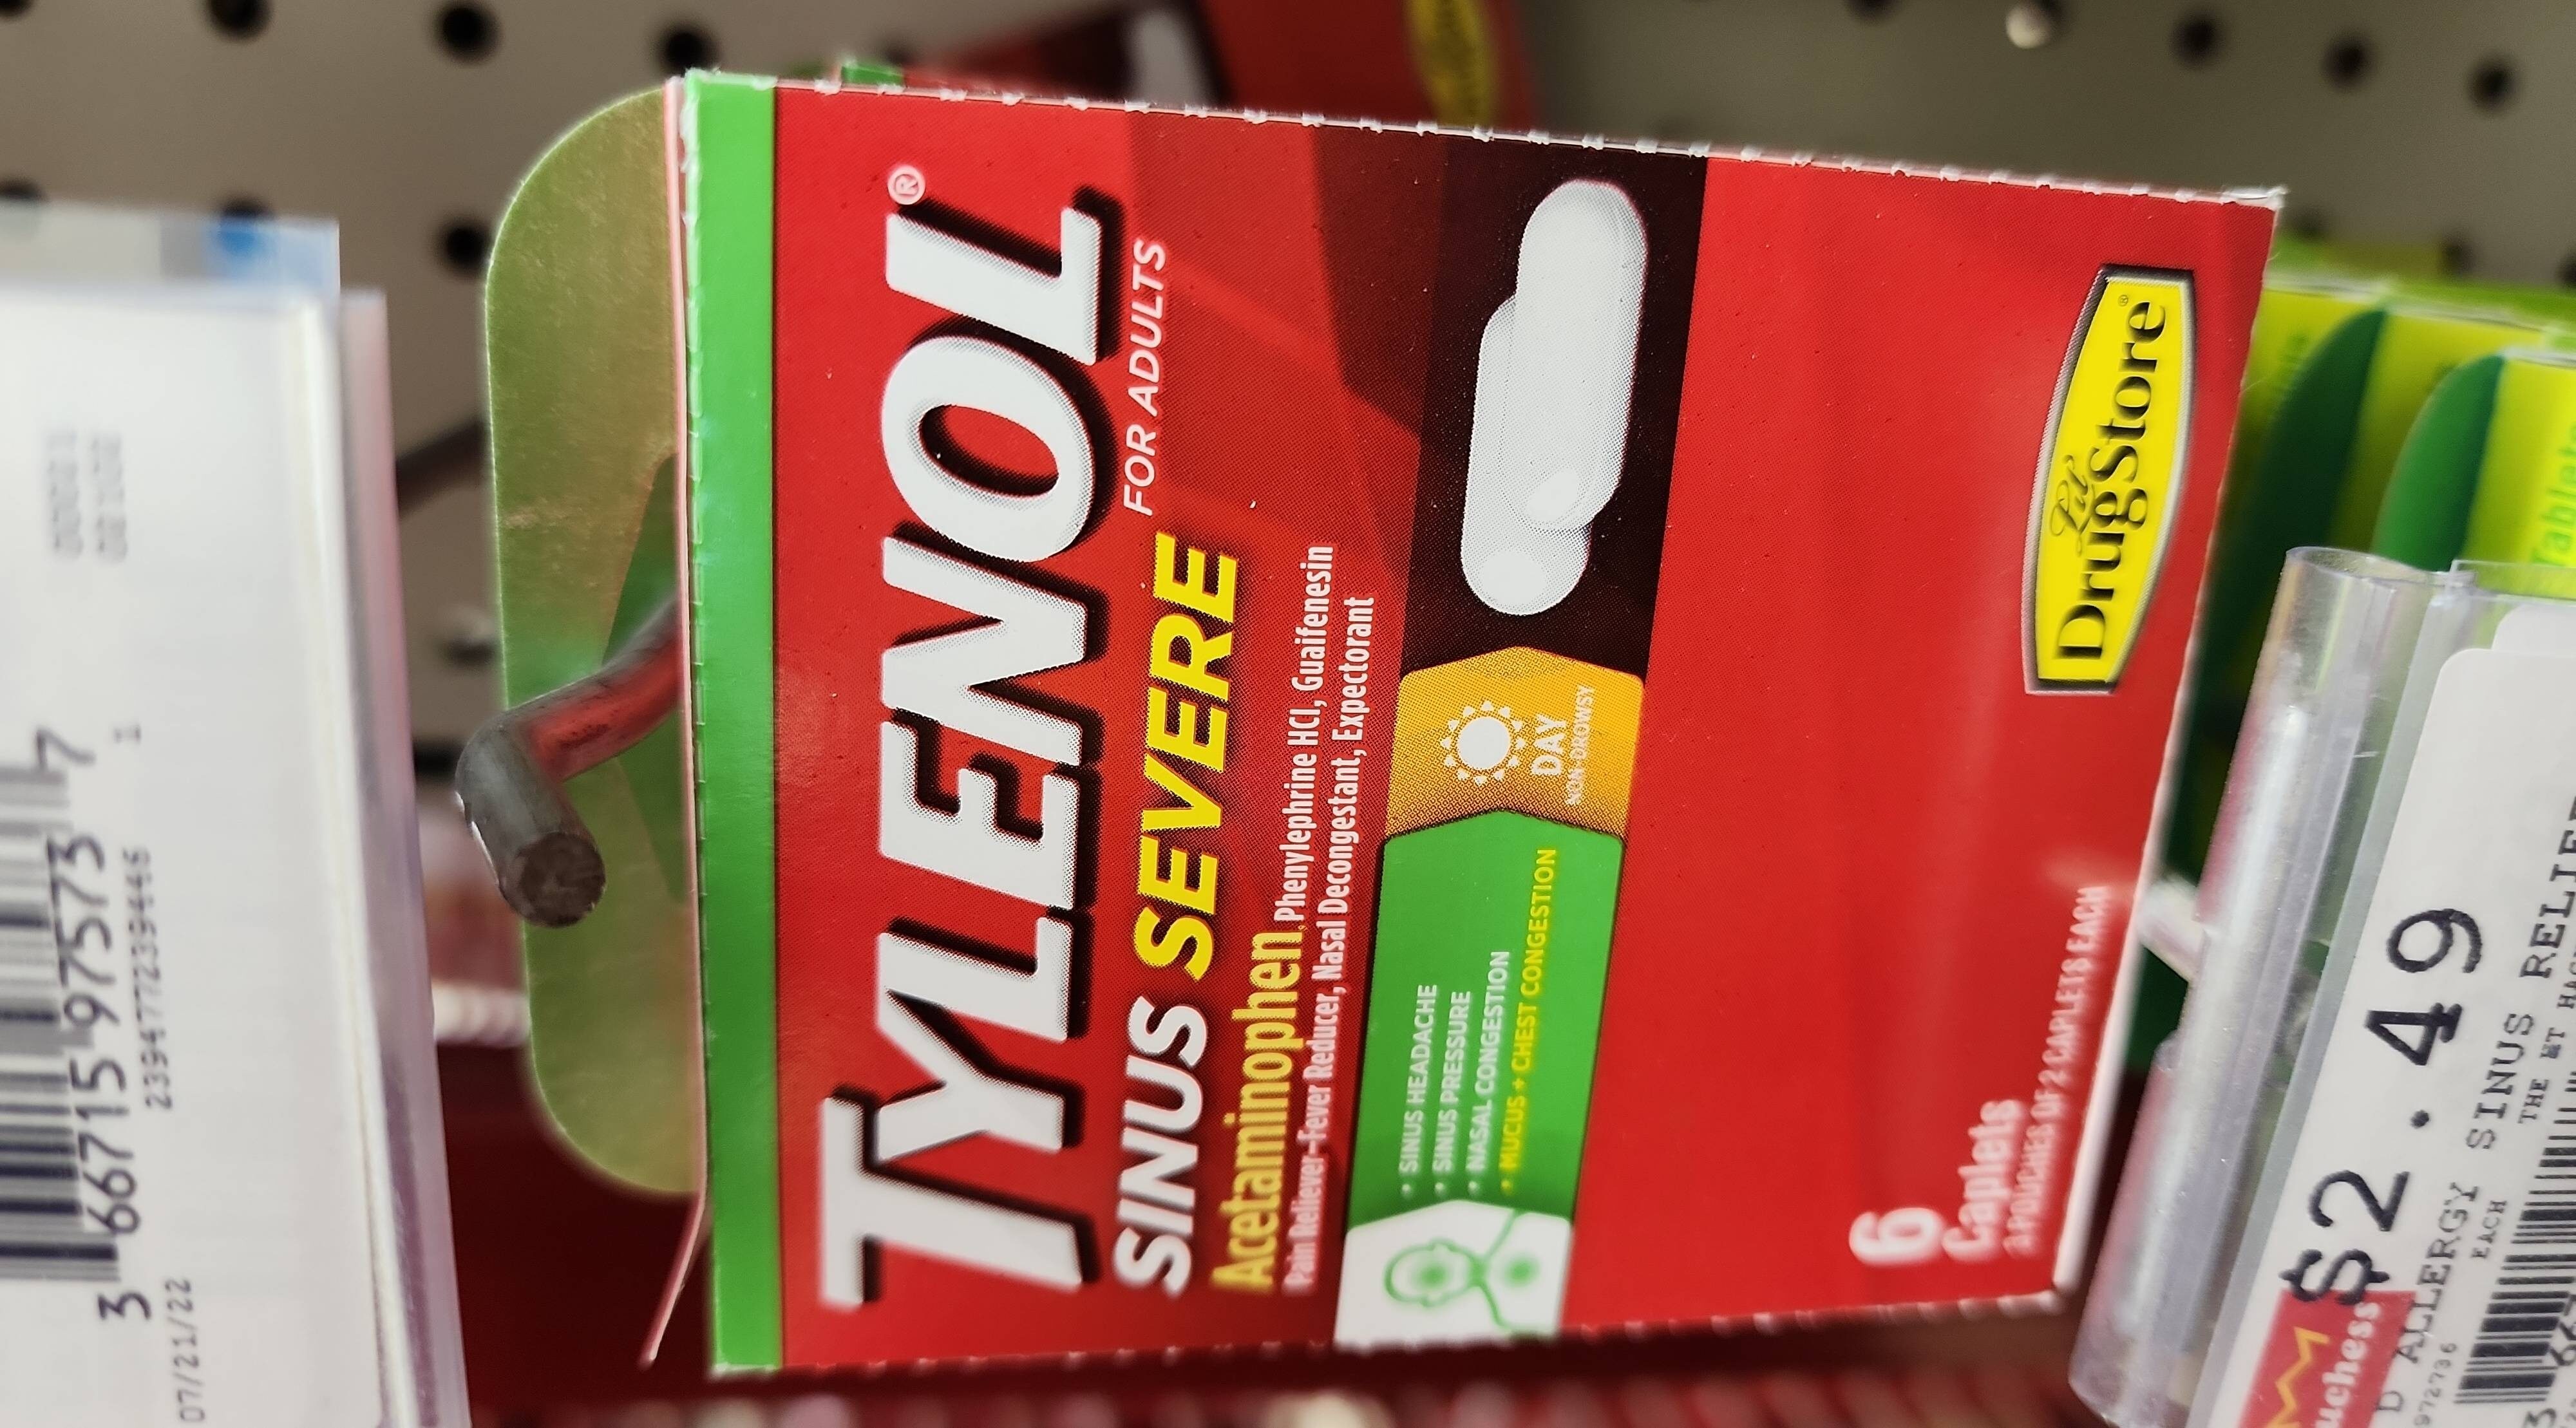 Tylenol sinus severe trial peg - Product - en